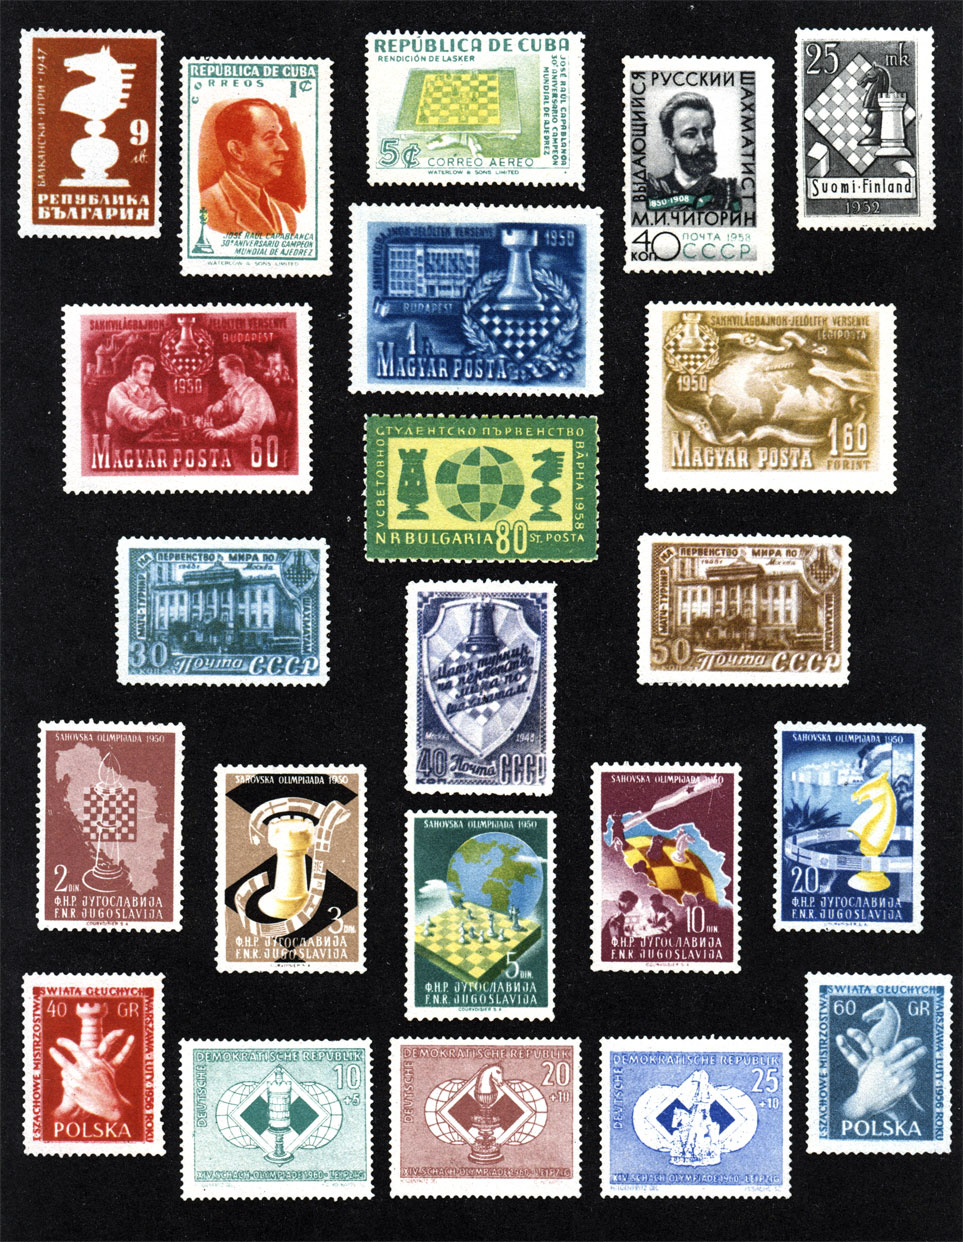 Почтовые марки с шахматной тематикой, изданные: Болгарией, Венгрией, ГДР, Кубой, Польшей, СССР, Финляндией, Югославией